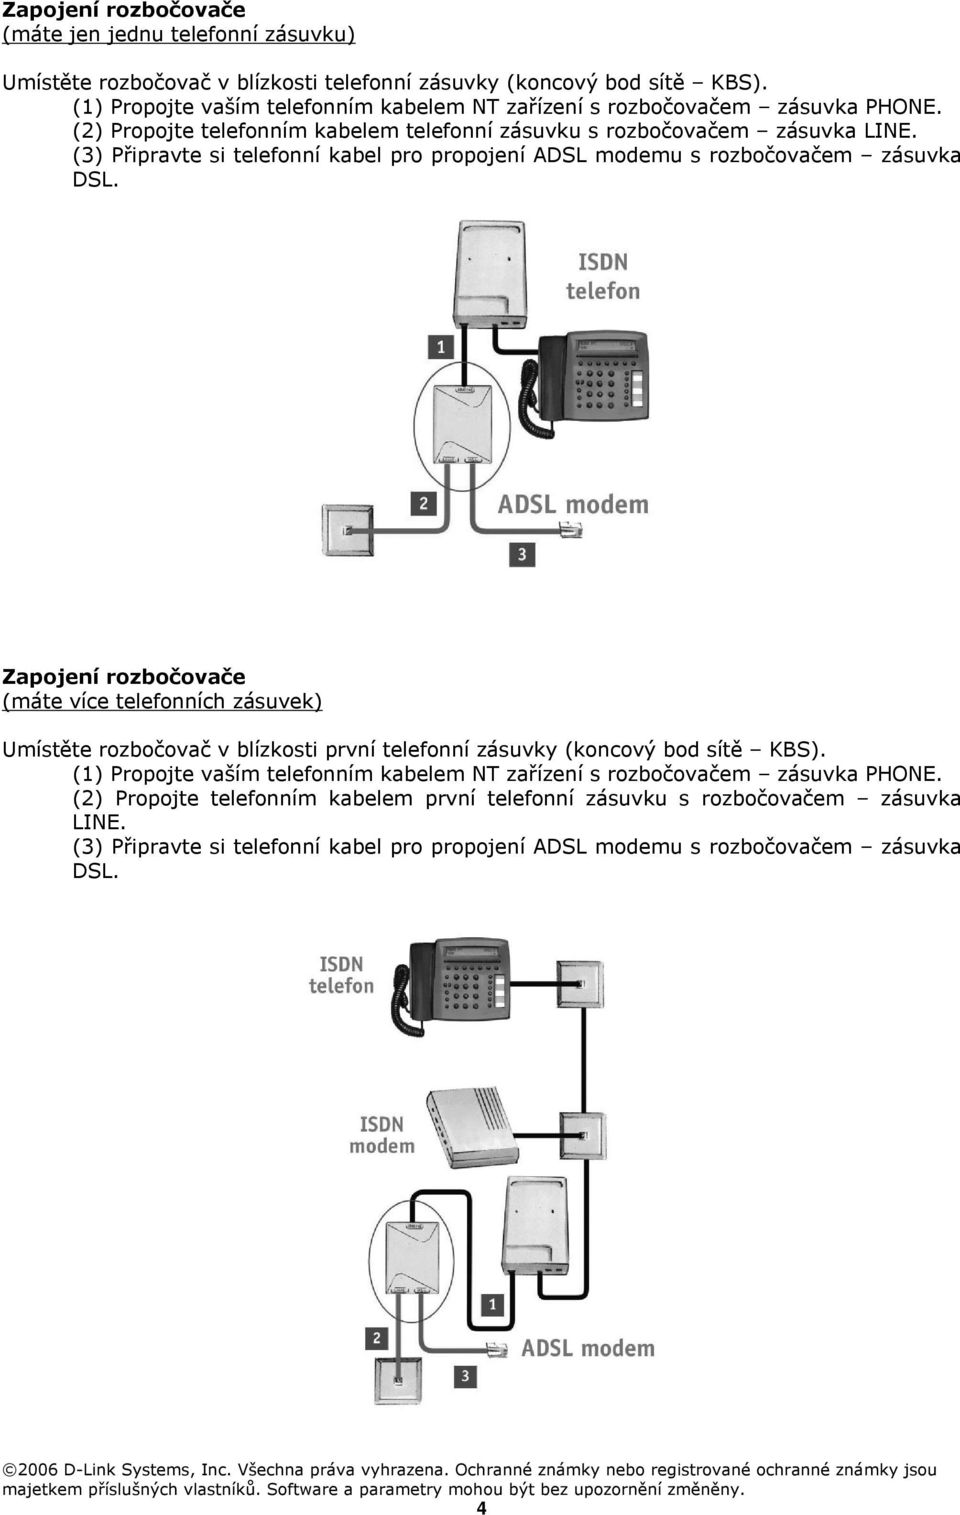 (3) Připravte si telefonní kabel pro propojení ADSL modemu s rozbočovačem zásuvka DSL.